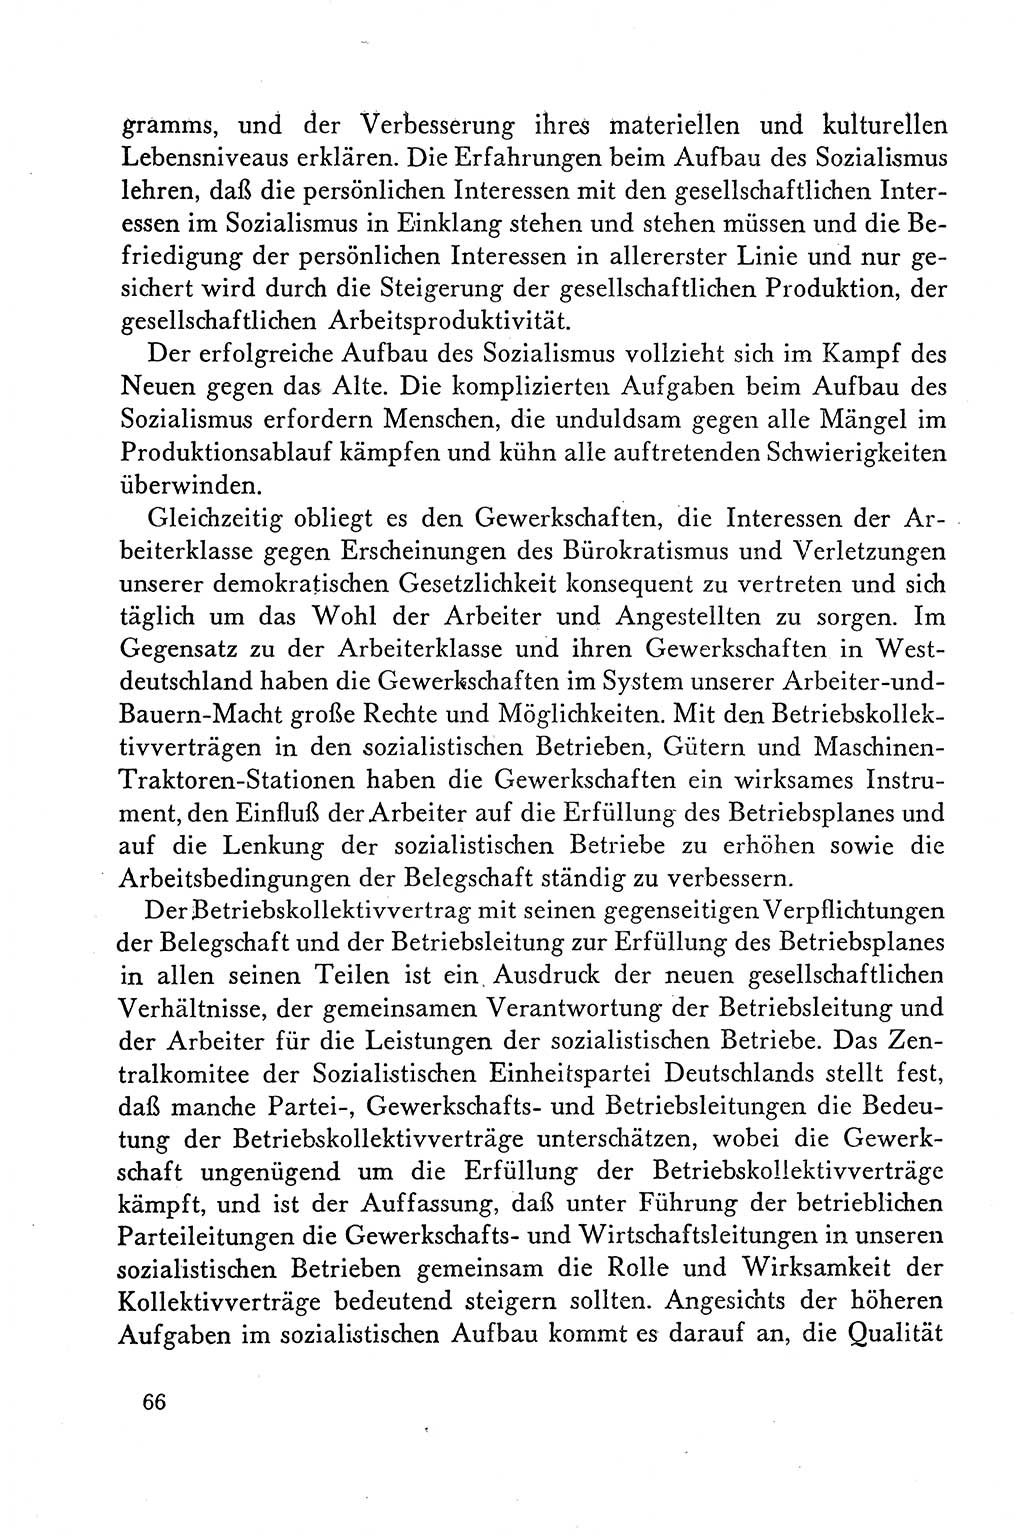 Dokumente der Sozialistischen Einheitspartei Deutschlands (SED) [Deutsche Demokratische Republik (DDR)] 1958-1959, Seite 66 (Dok. SED DDR 1958-1959, S. 66)